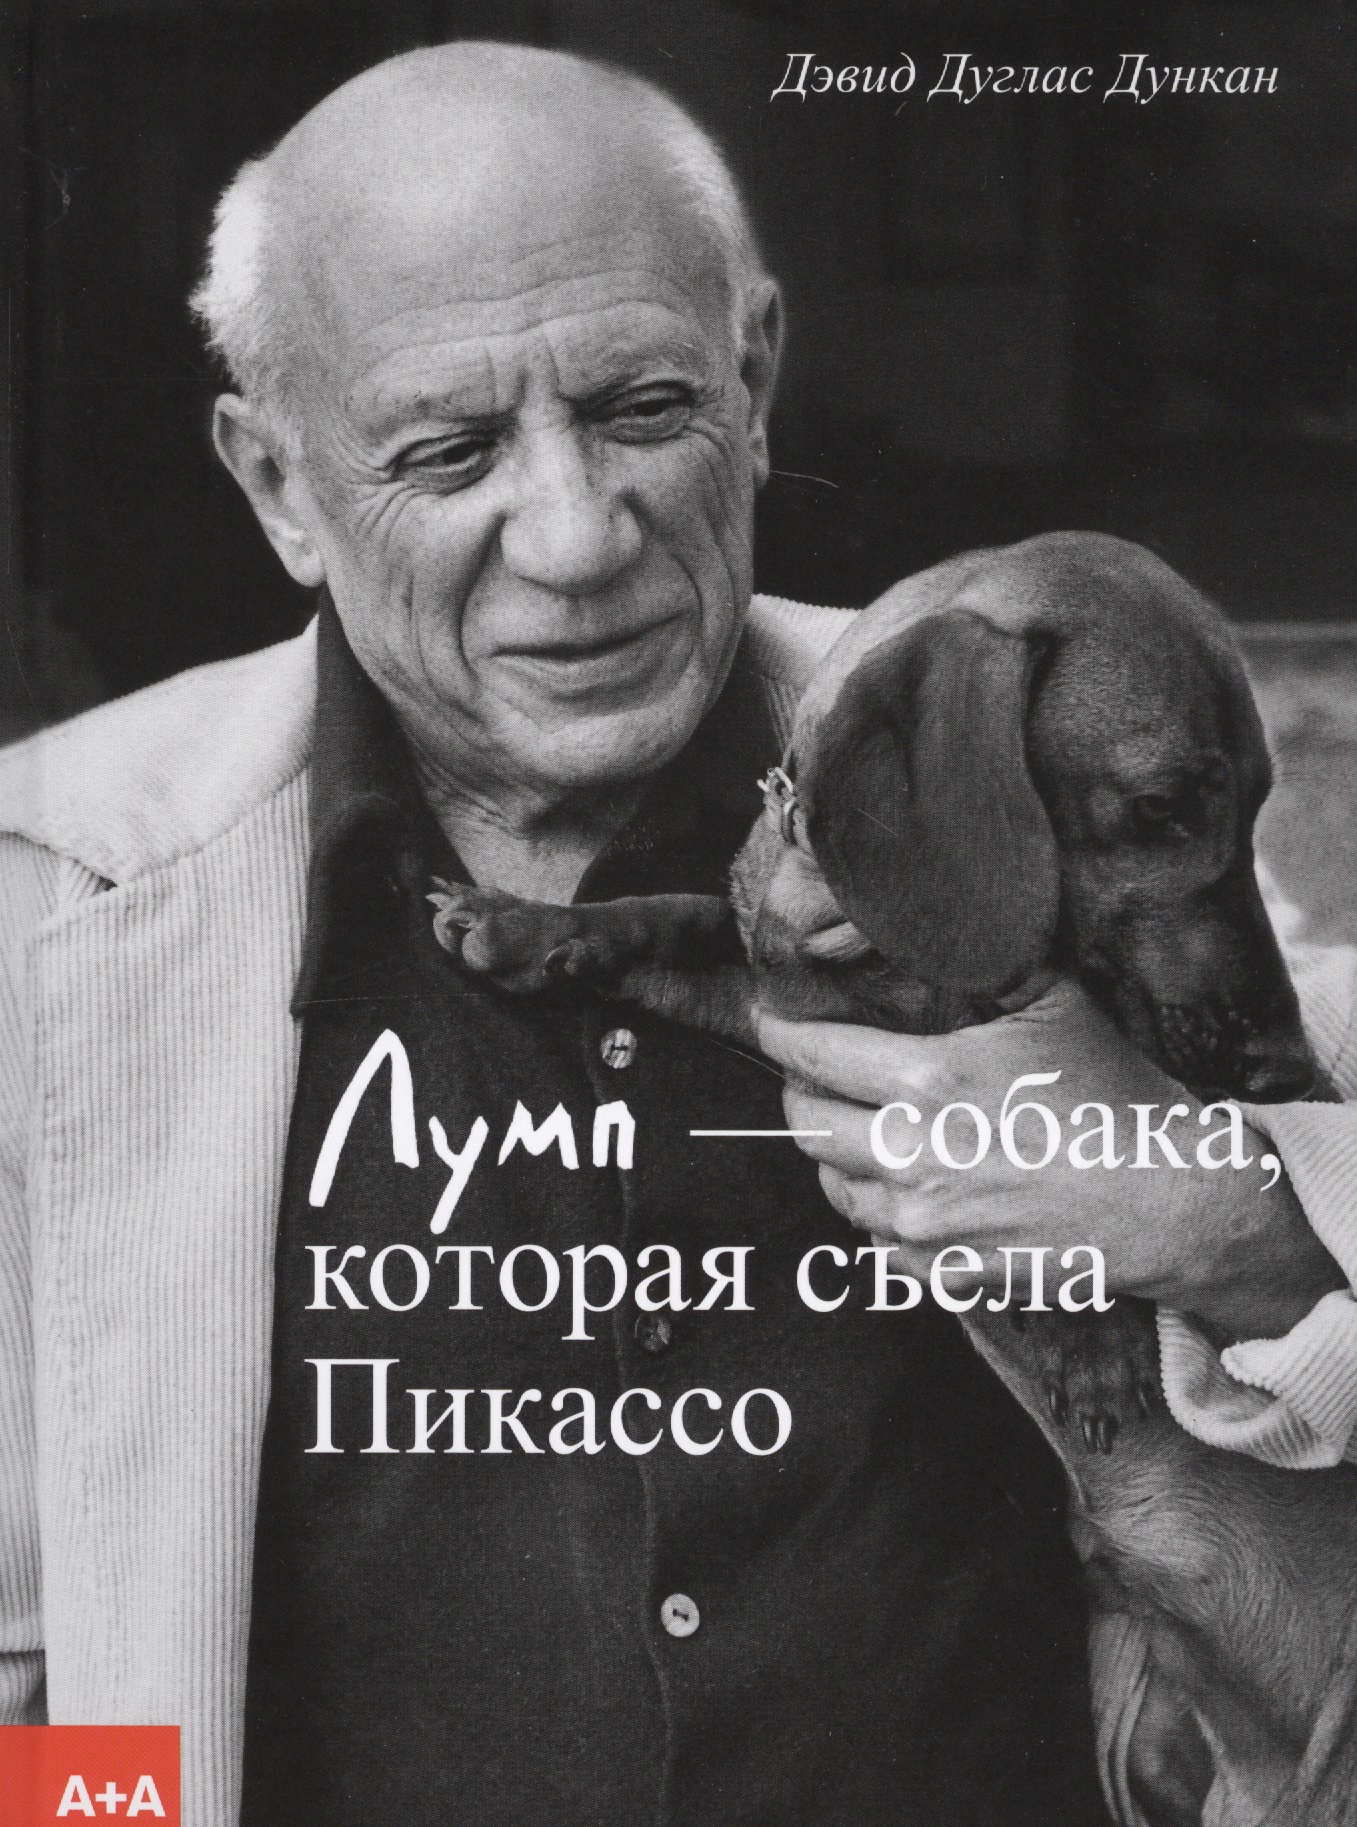 видмайер пикассо о пикассо интимный портрет Лумп — собака, которая съела Пикассо